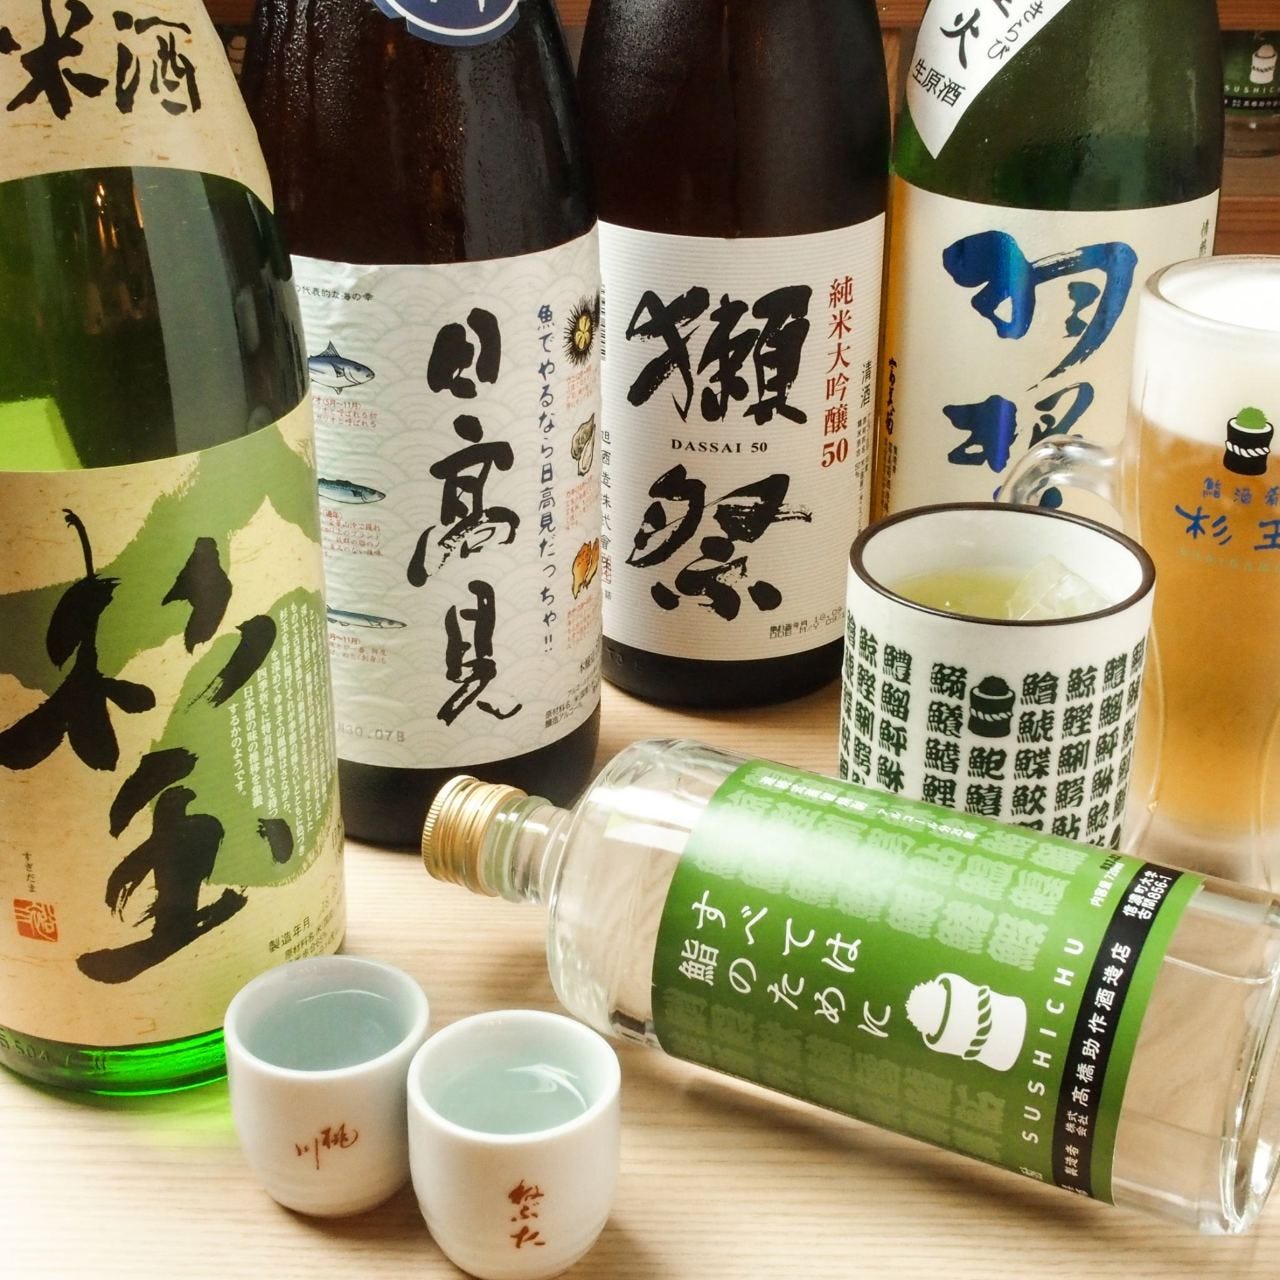 鮨・酒・肴 杉玉 新高円寺